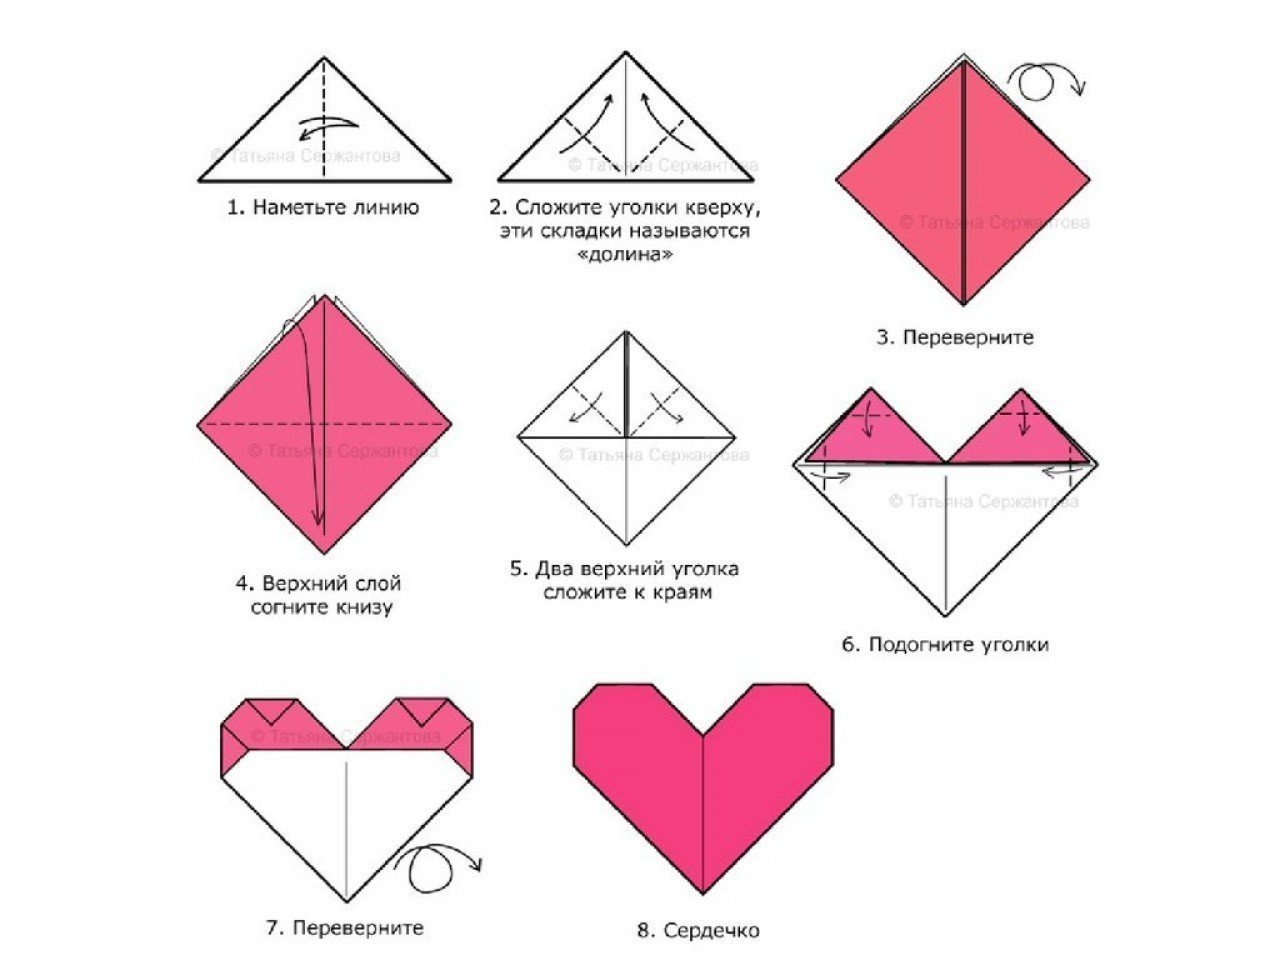 Сердечко из бумаги легко. Оригами сердечко из бумаги пошаговая инструкция. Сердечки оригами из бумаги своими руками схемы поэтапно. Как сложить из бумаги сердечко схема. Оригами сердце из бумаги пошаговой инструкции.